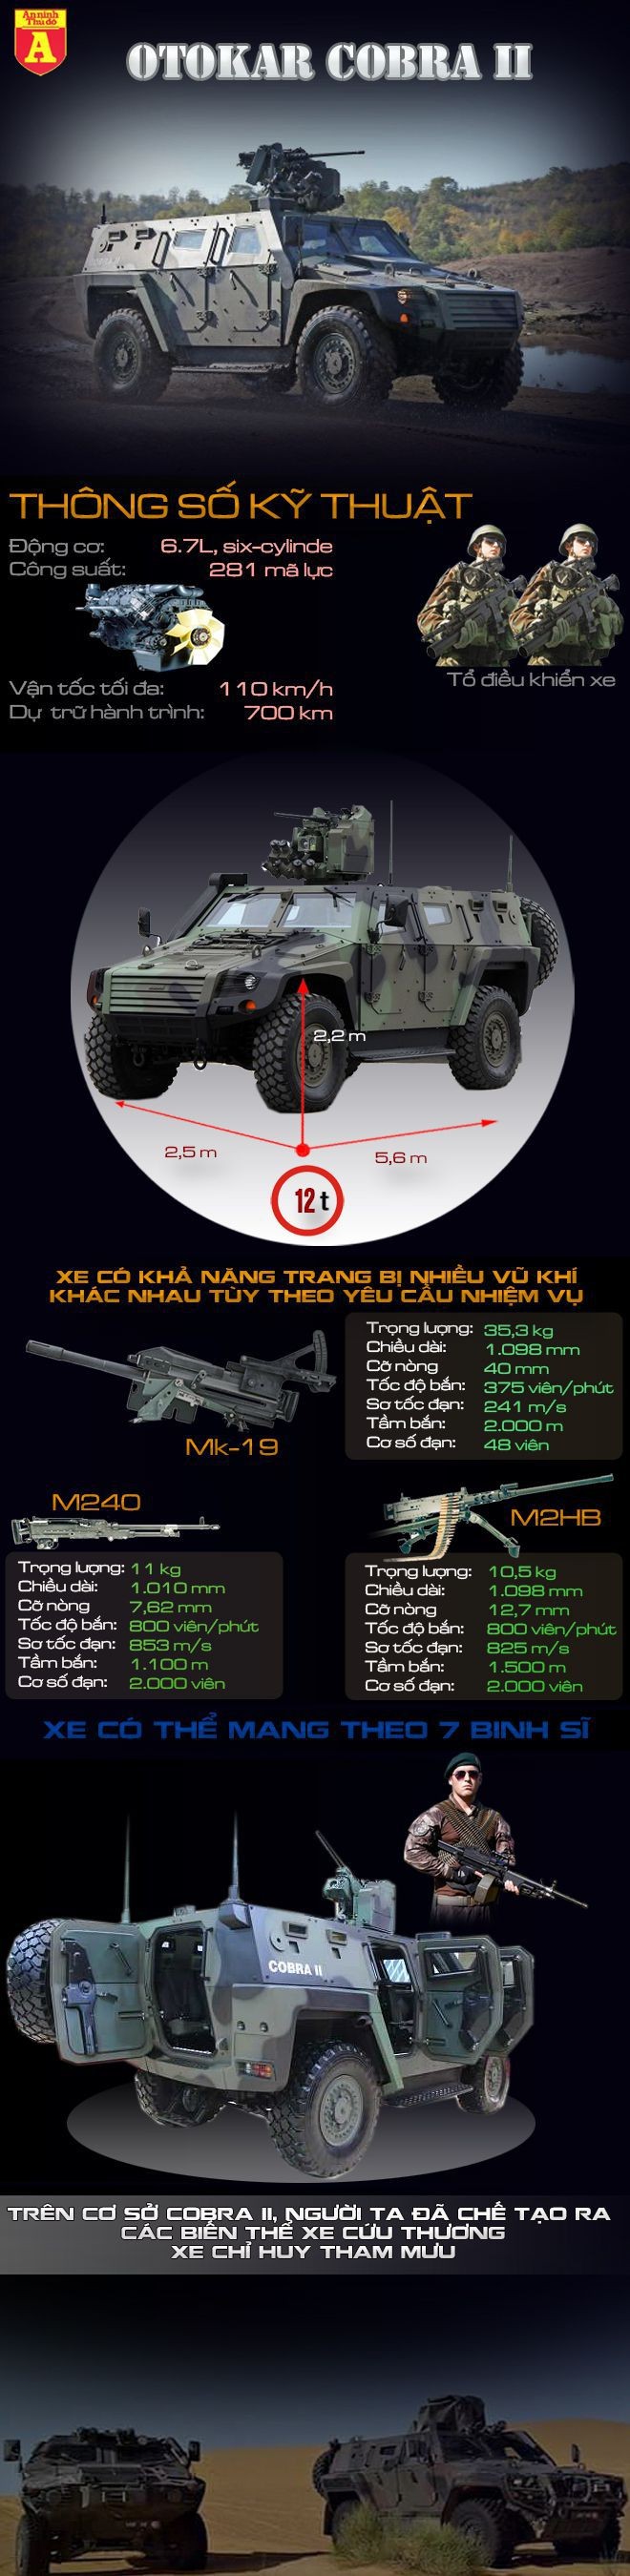 [Infographic] Sức mạnh siêu xe bọc thép mang tên "Hổ mang bành" ảnh 2